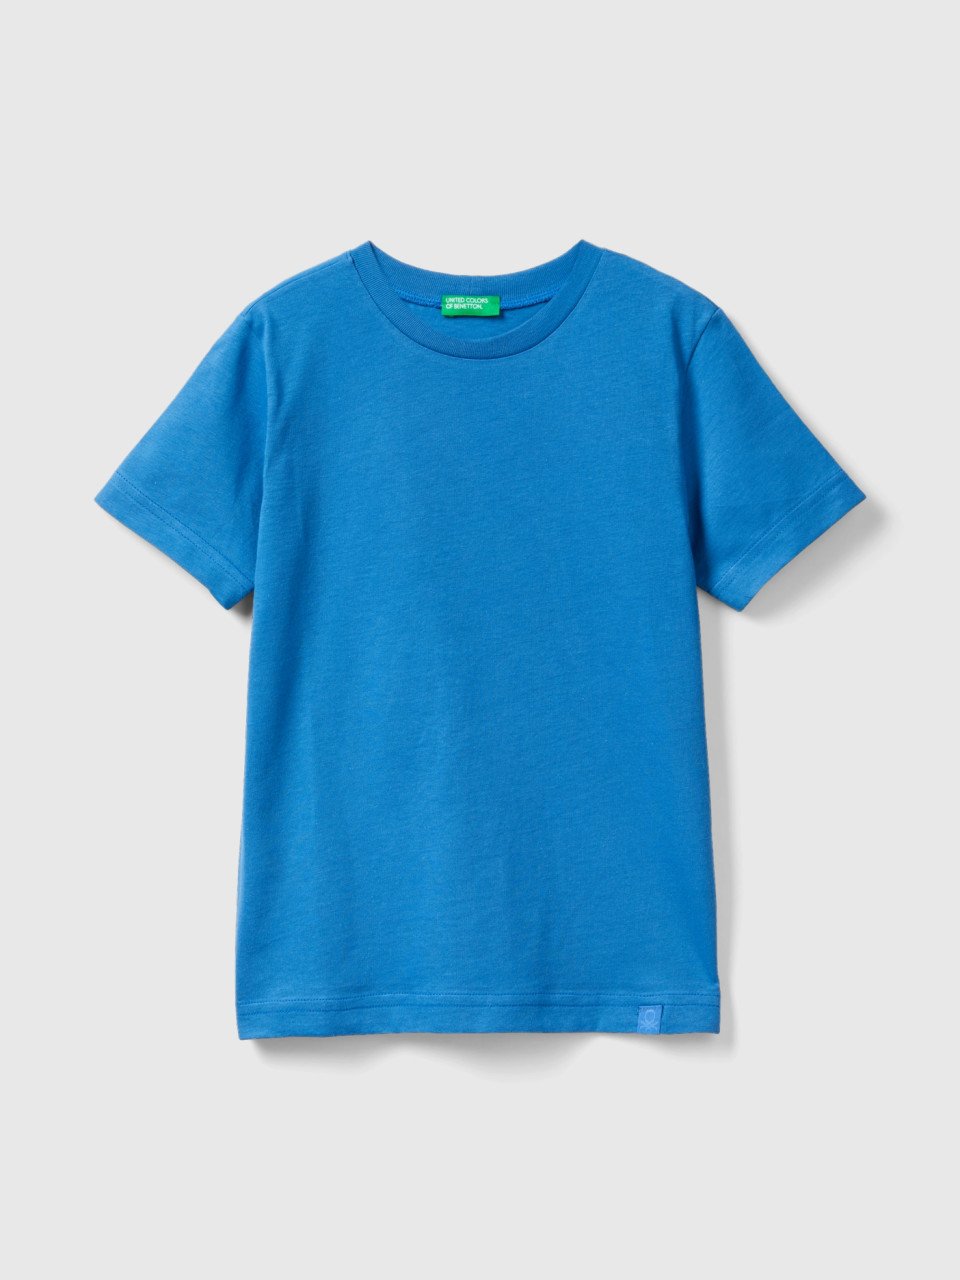 Benetton, Organic Cotton T-shirt, Blue, Kids